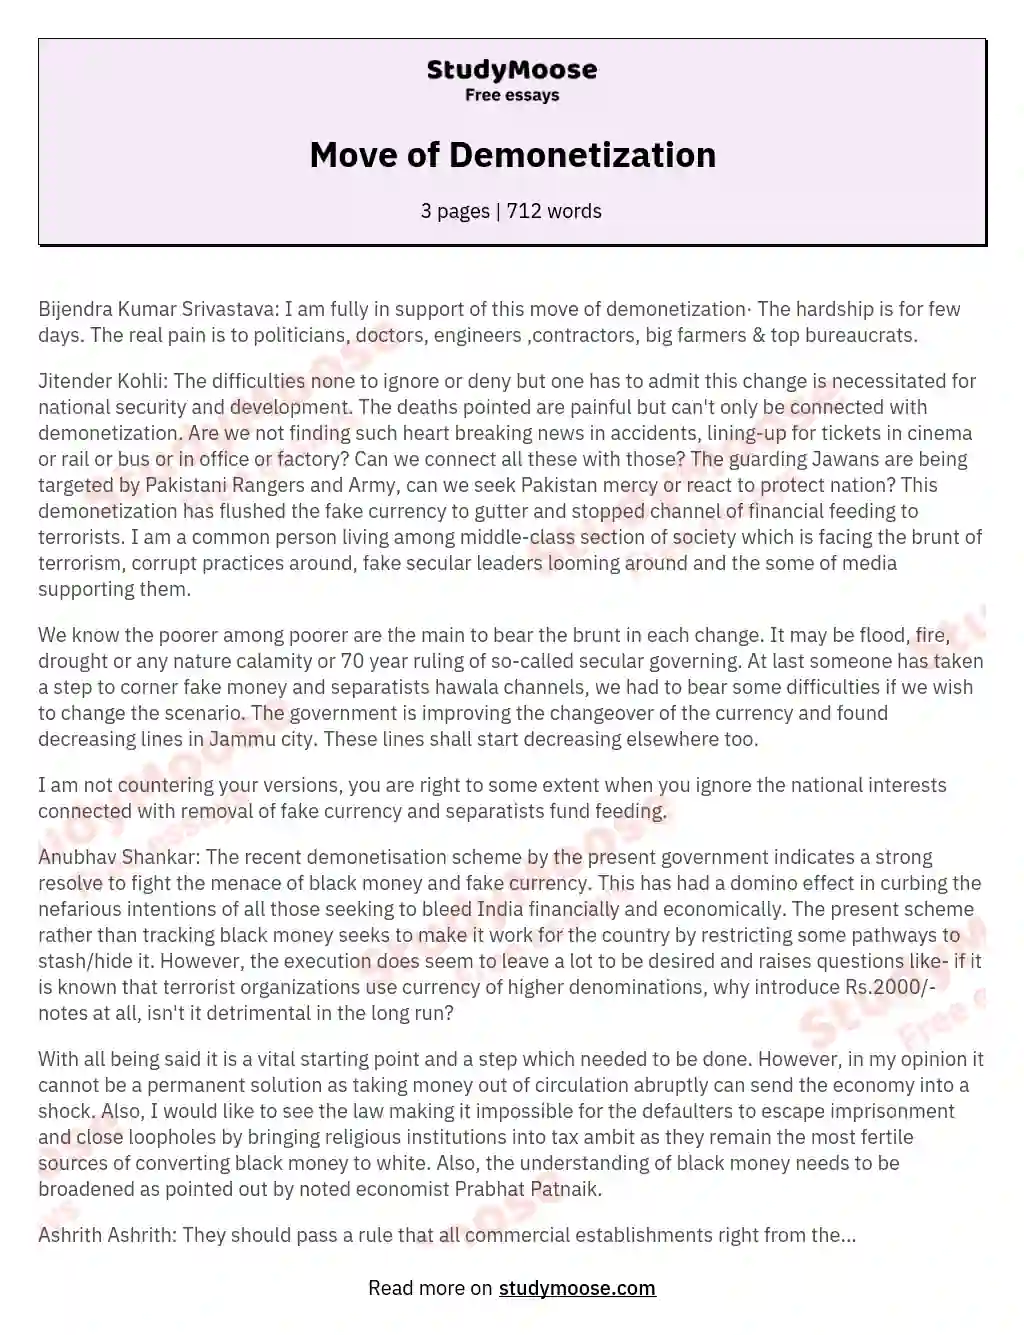 demonetisation essay in english 100 words